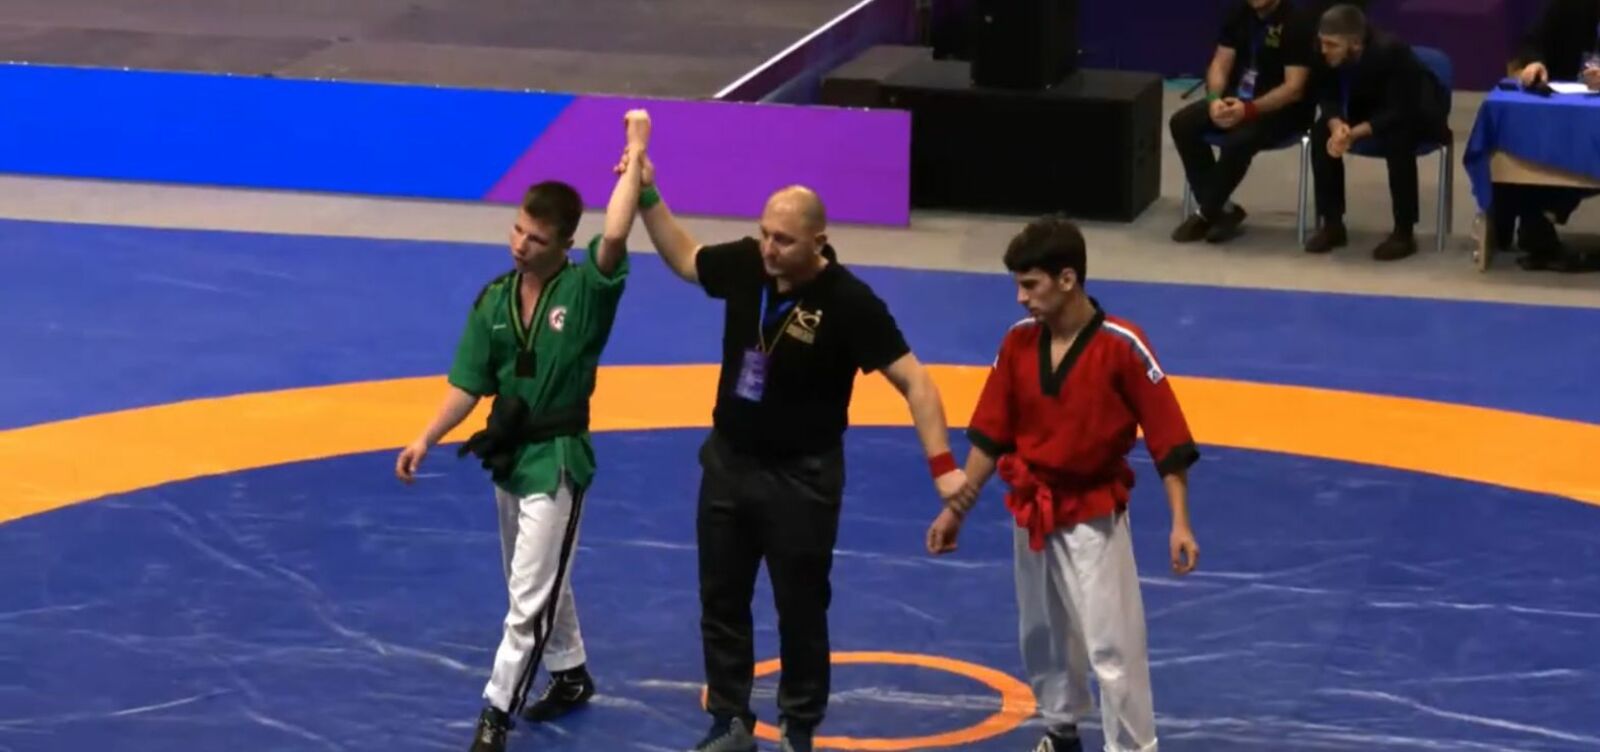 Спортсмен из Куюргазинского района Алексей Сиразетдинов стал бронзовым призёром на Всероссийском турнире по борьбе корэш